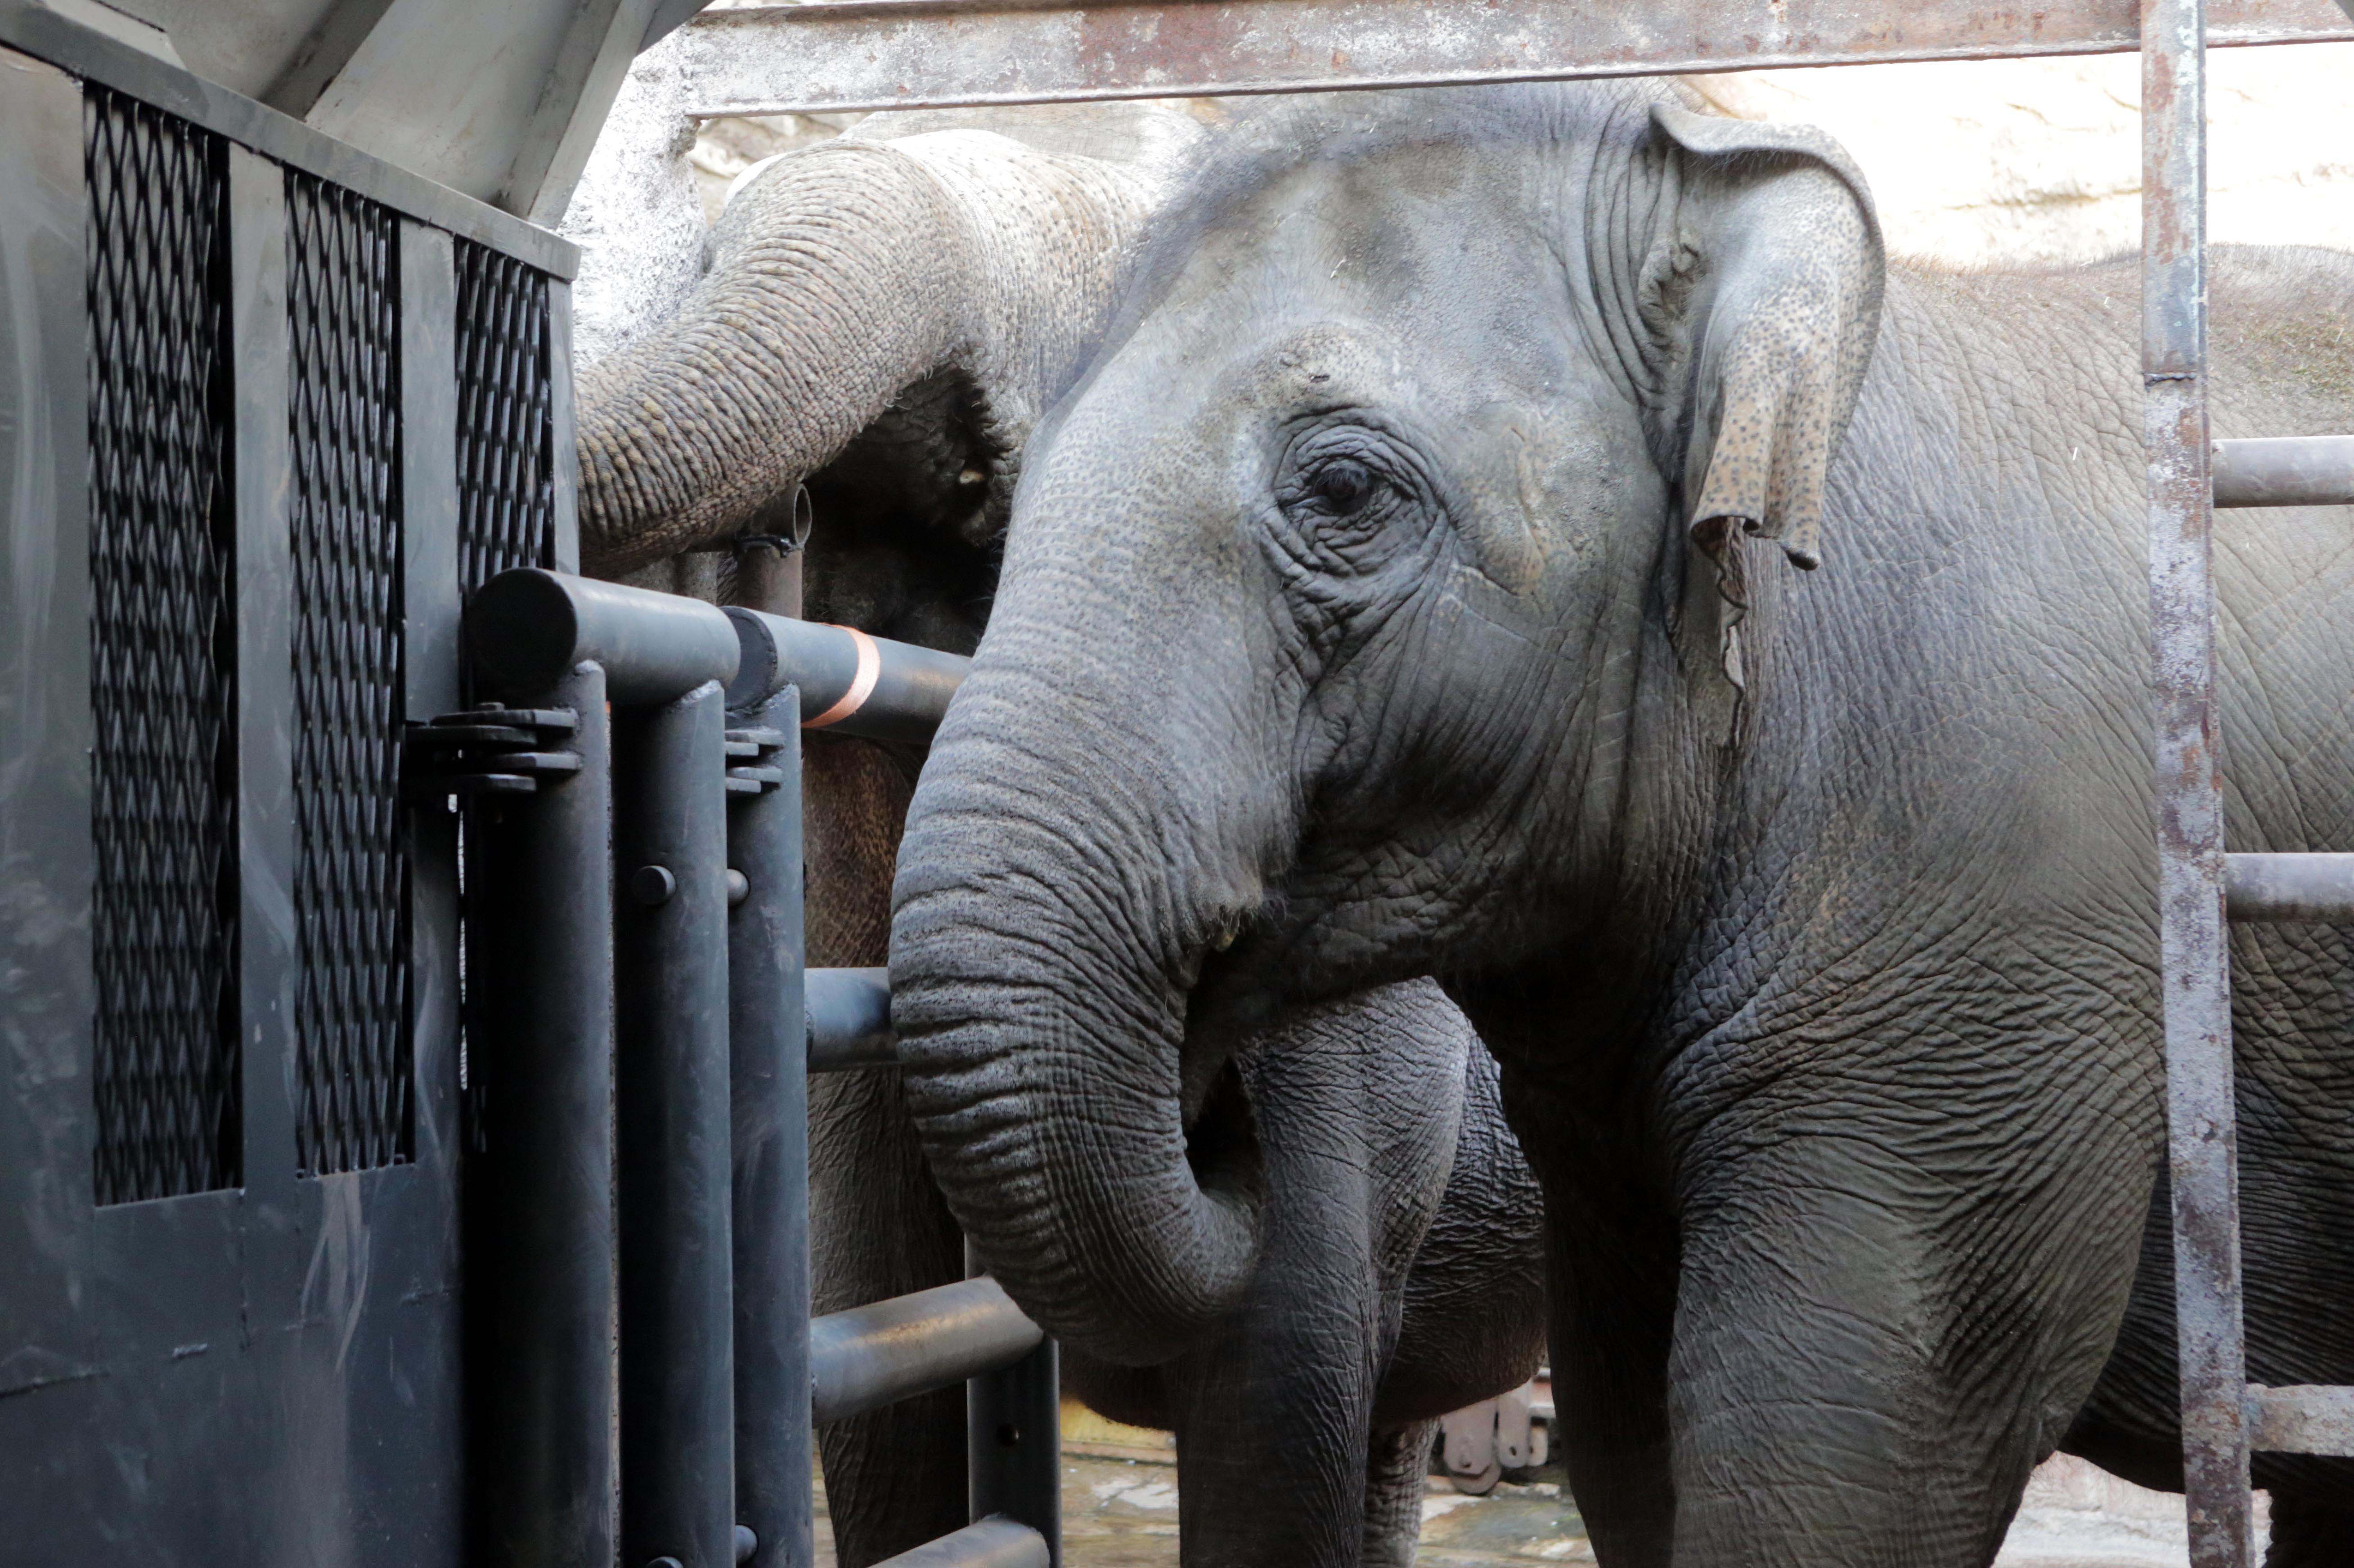 La elefanta había sido trasladada desde Mendoza a Brasil en un viaje de cinco días